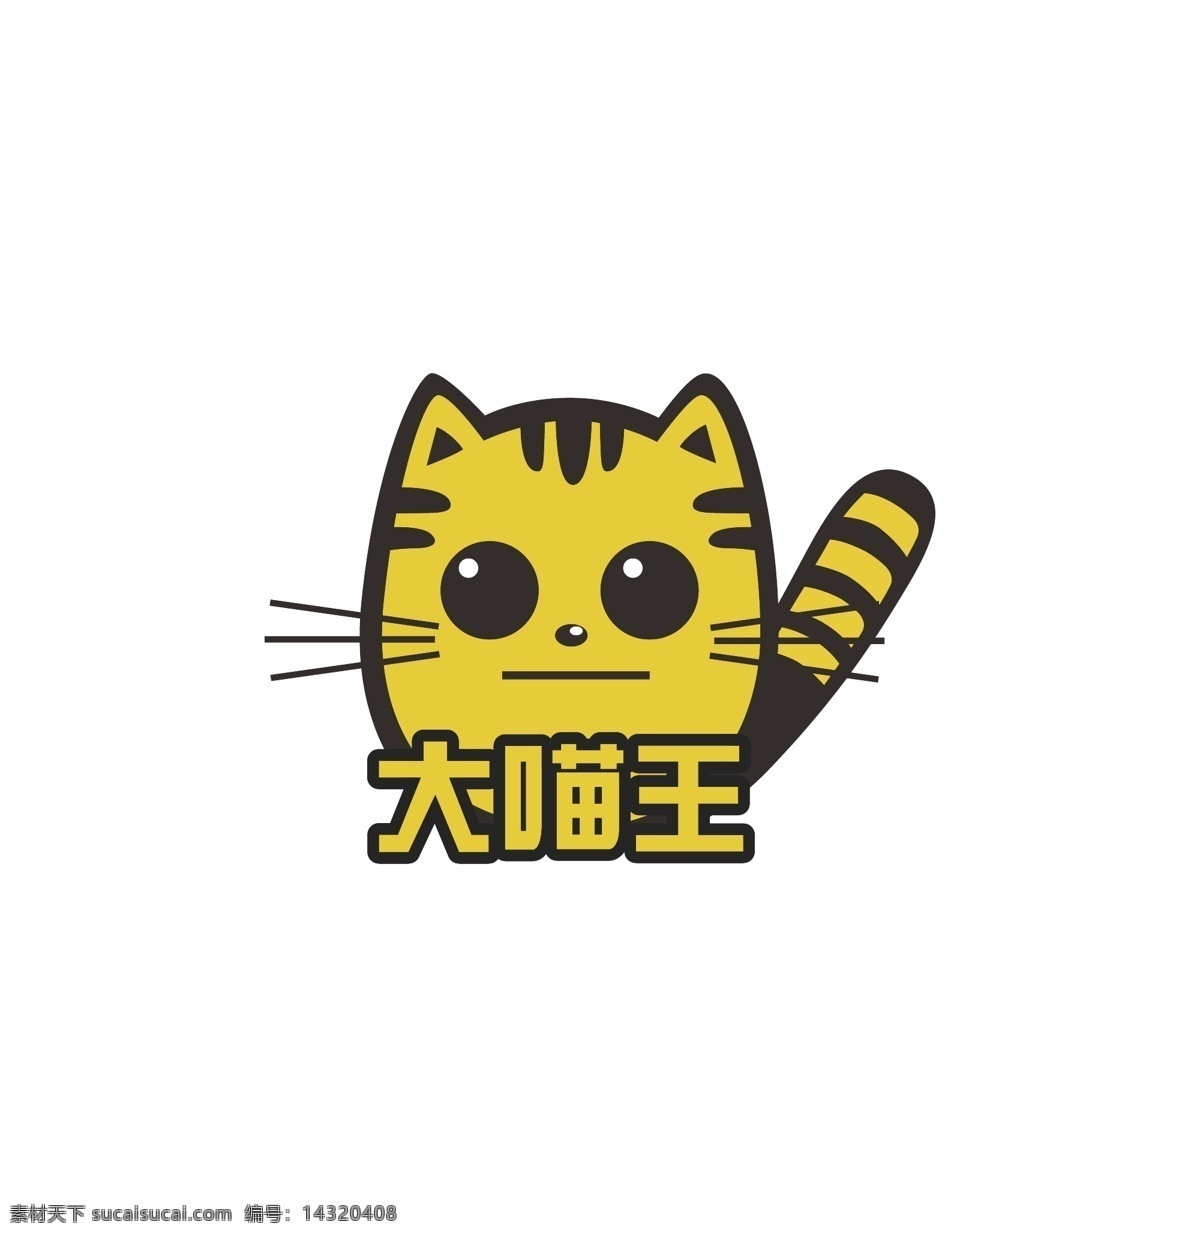 大 喵 王 logo 猫logo 猫设计 猫素材 猫标志 猫动画 买广告设计 淘气猫 可爱猫 猫海报 猫图标 猫矢量图 标志logo 标志图标 企业 标志